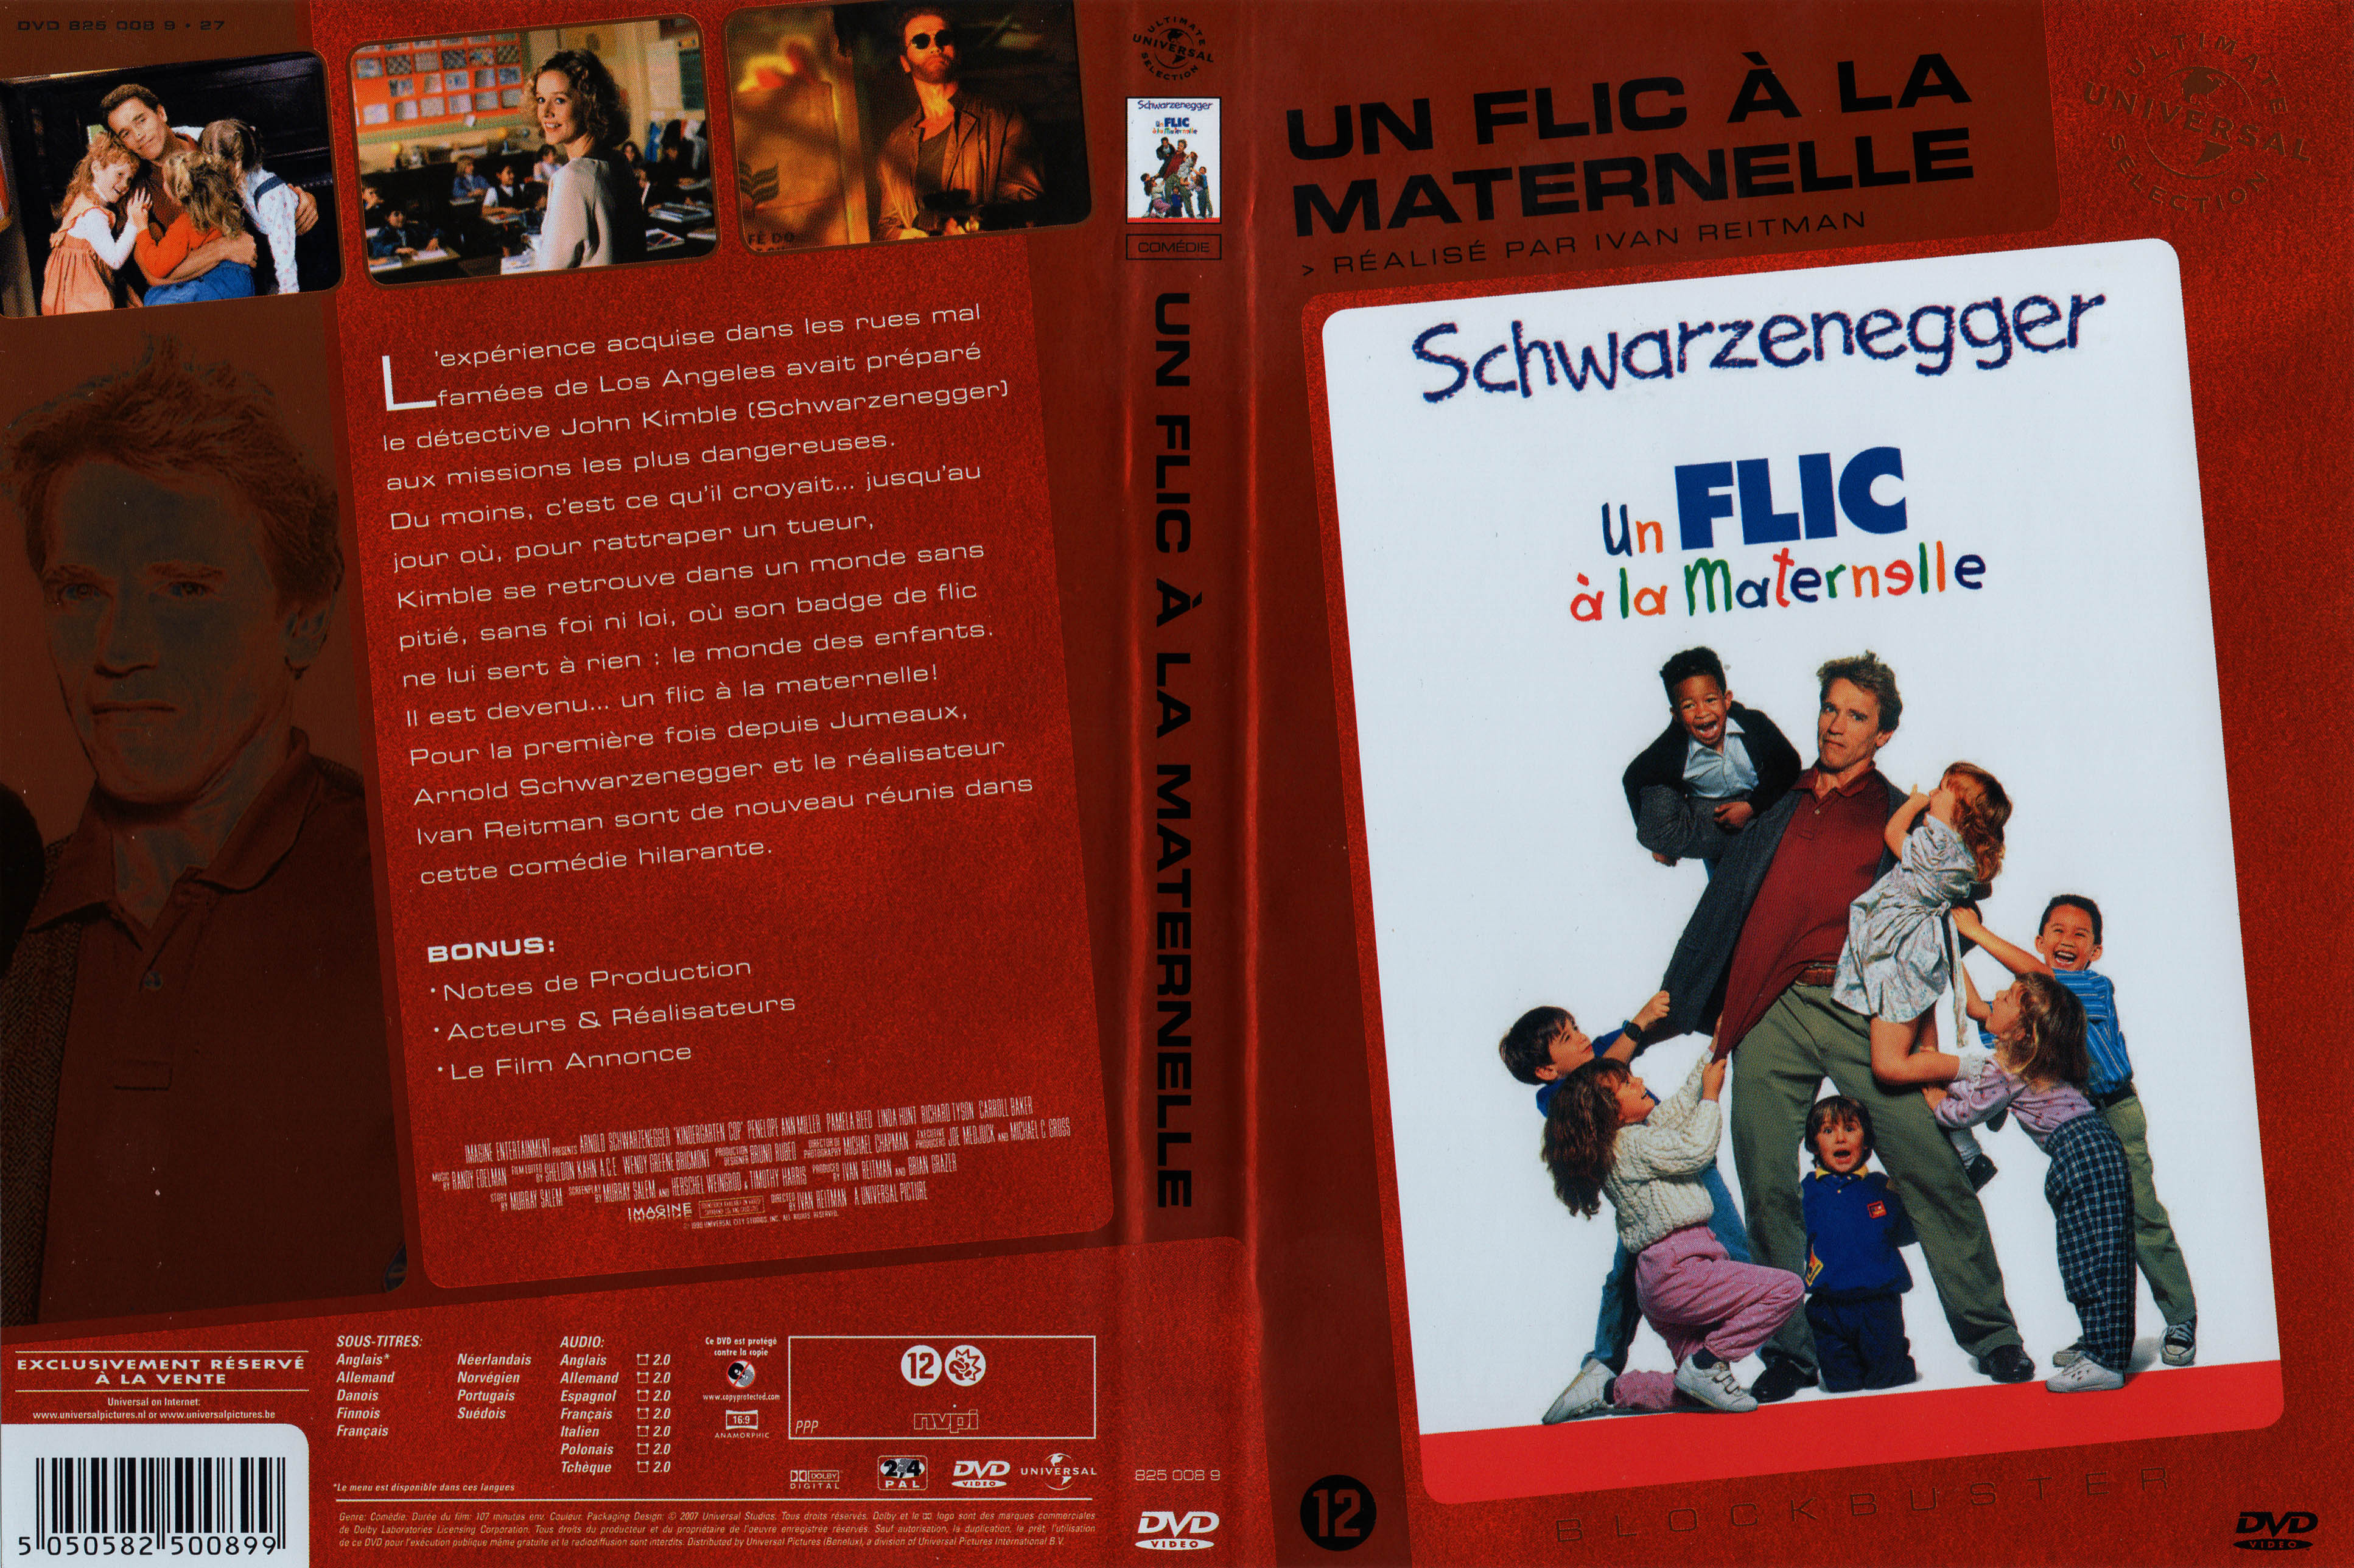 Jaquette DVD Un flic  la maternelle v3